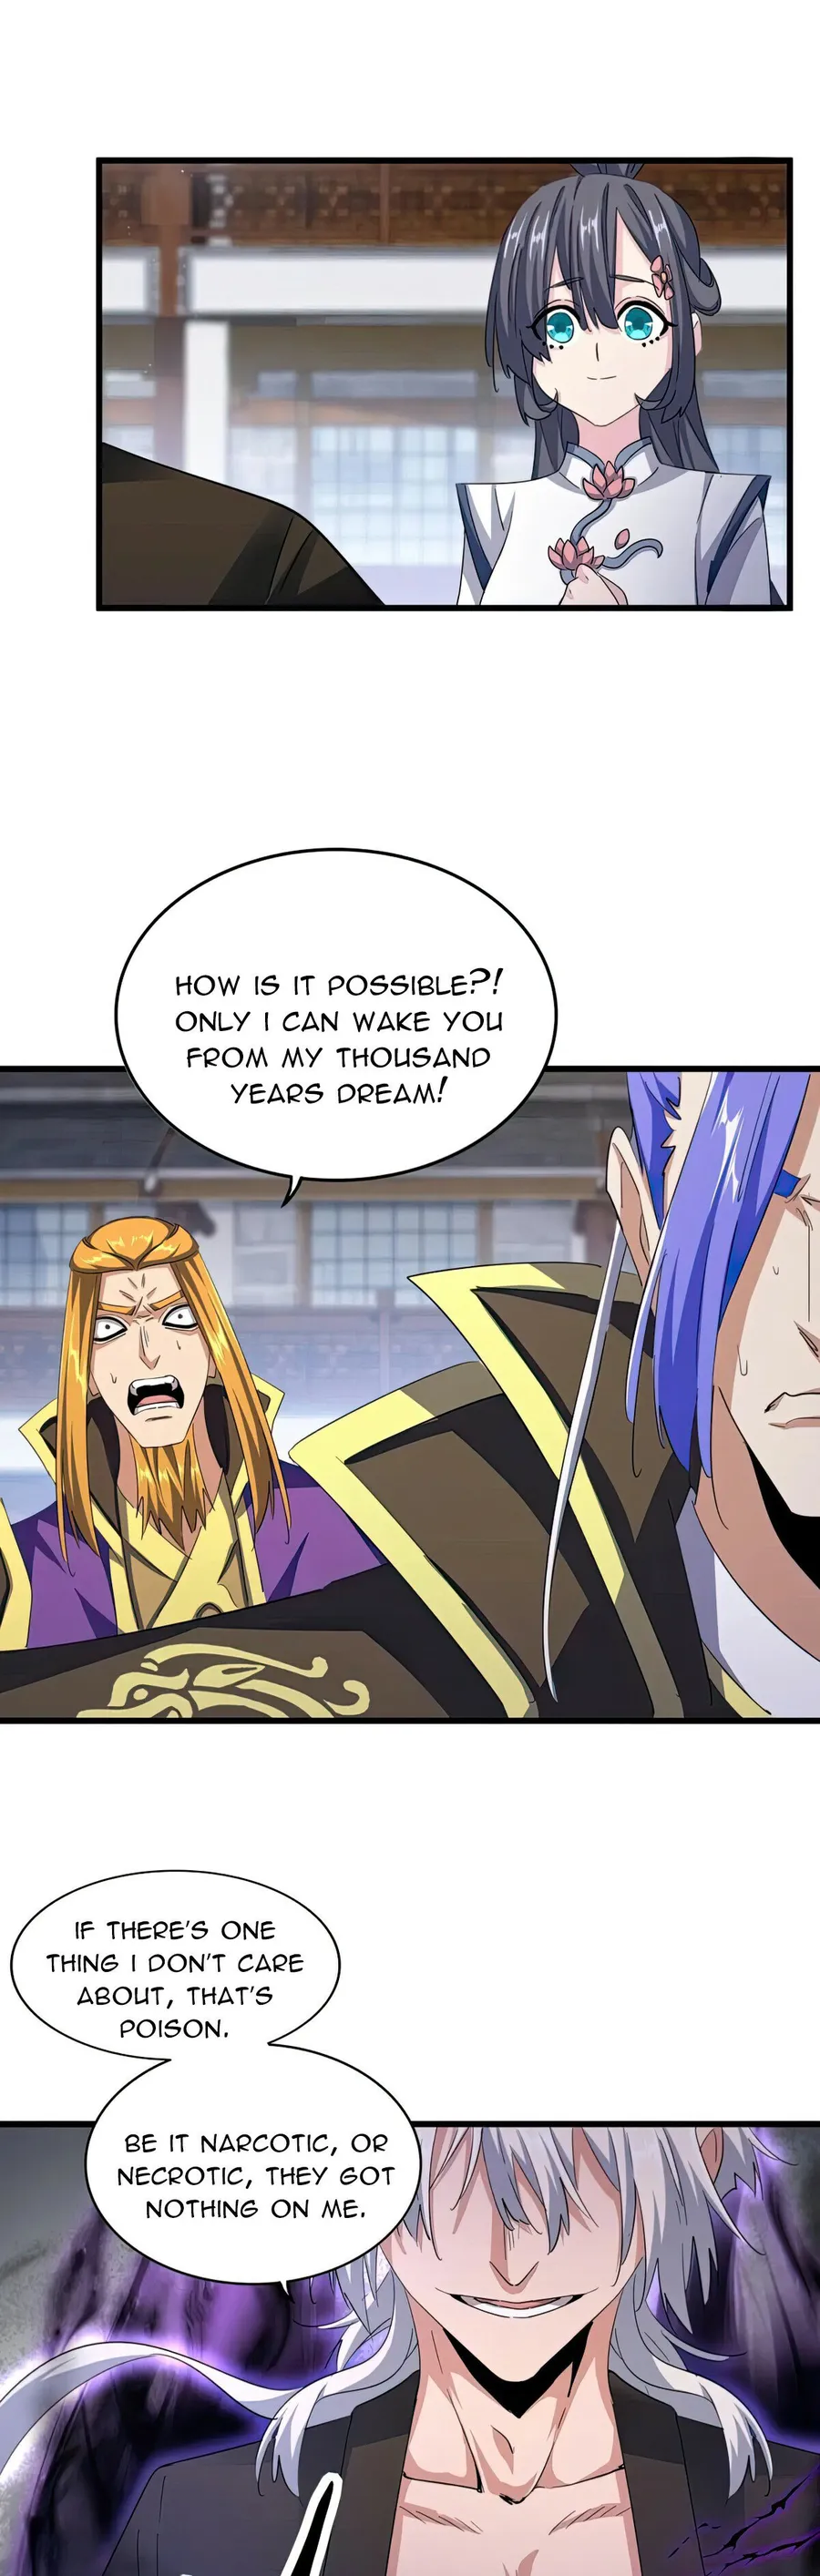 Magic Emperor Chapter 398 page 13 - Mangakakalot